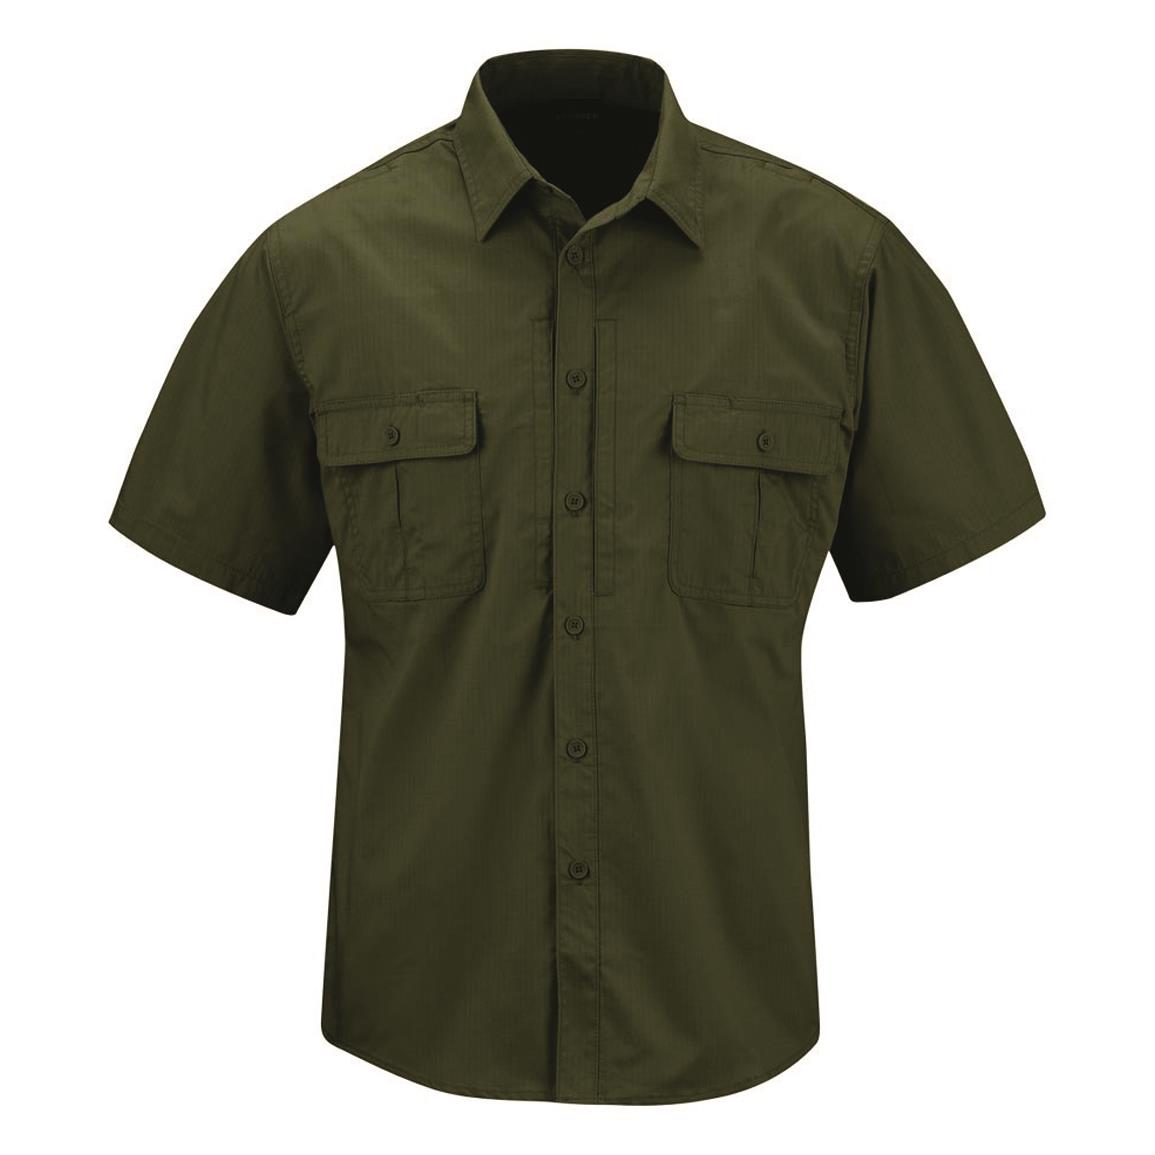 Propper Men's Kinetic Short Sleeved Tactical Shirt, Olive Green